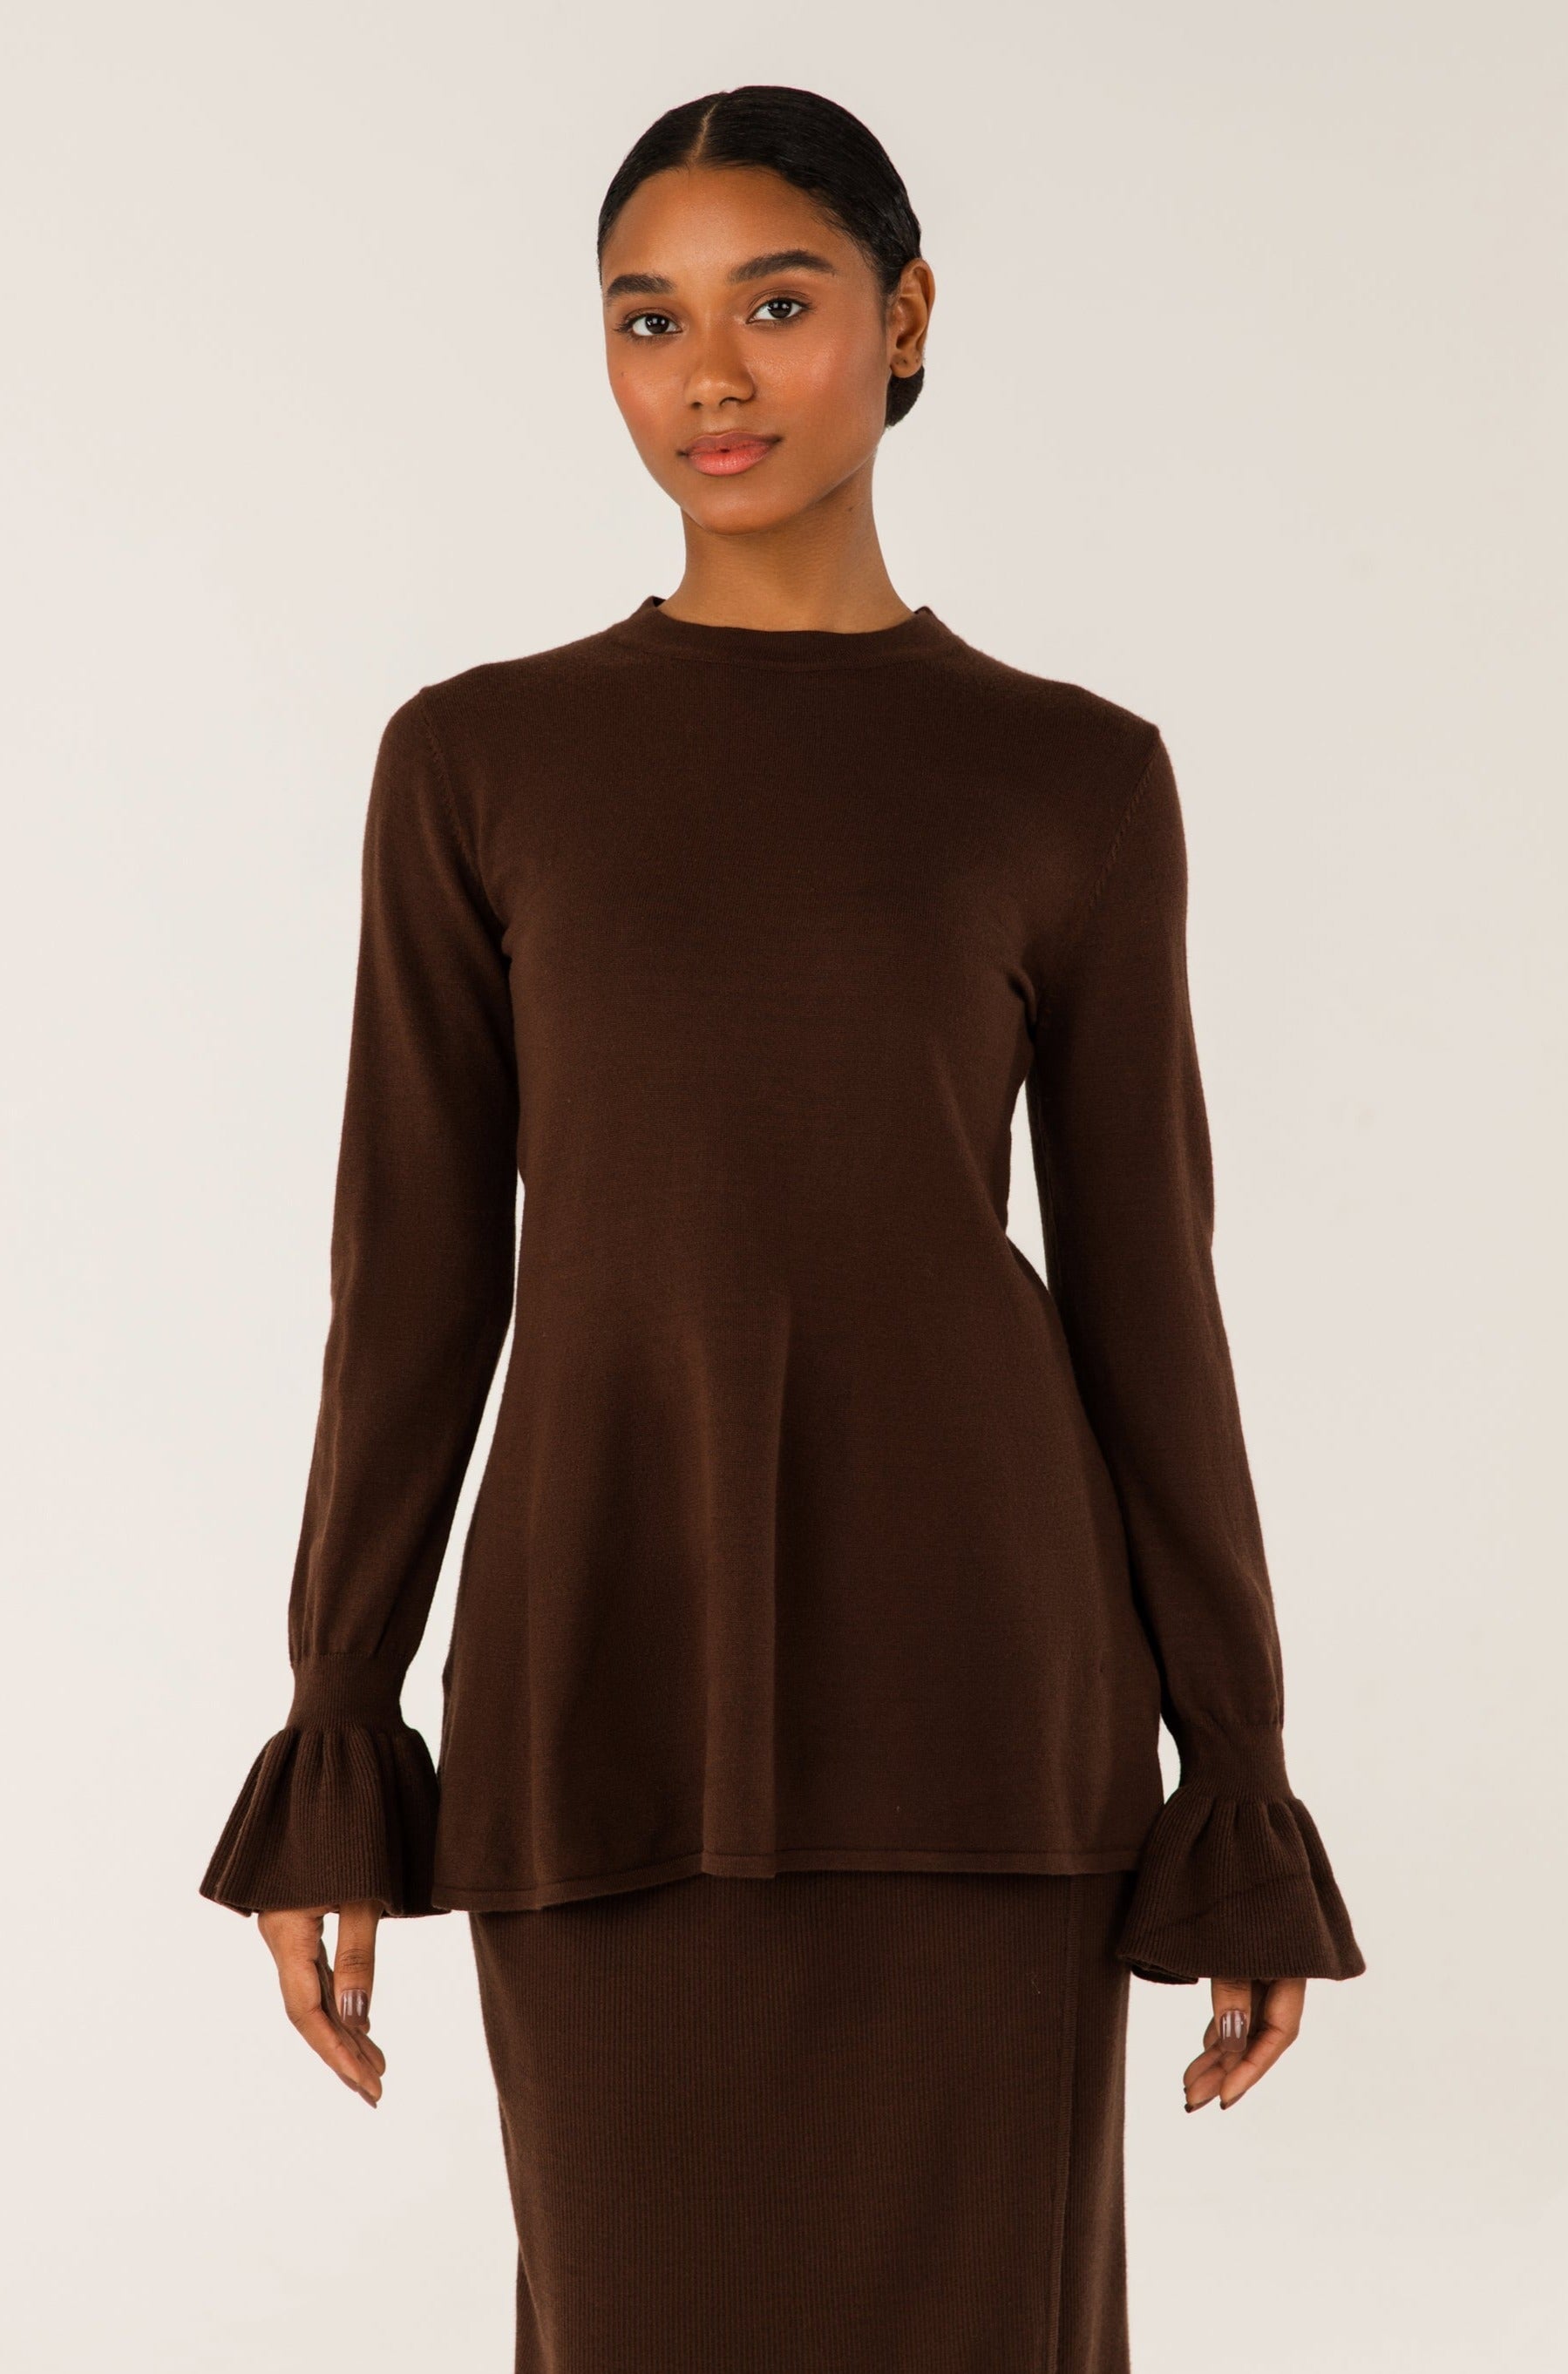 Alara Peplum Knit Top - Chocolate Brown Veiled 